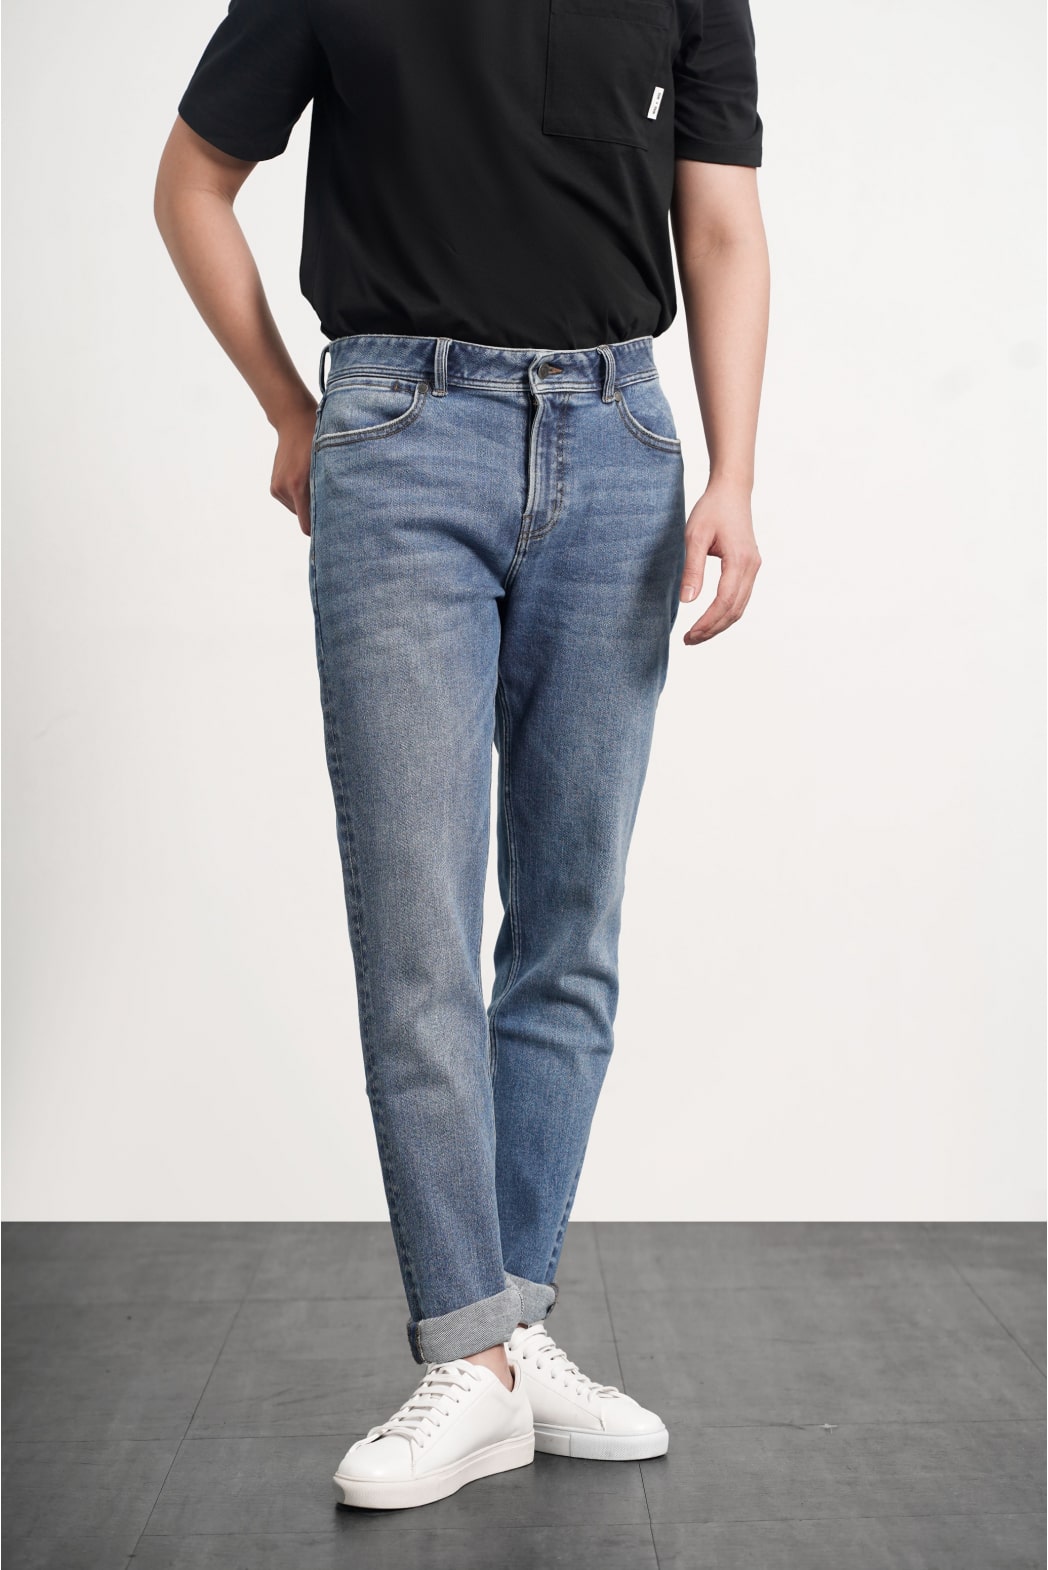 Quần jean slim fit mang phong cách hiện đại, thoải mái khi cử động rất được nam giới yêu thích.